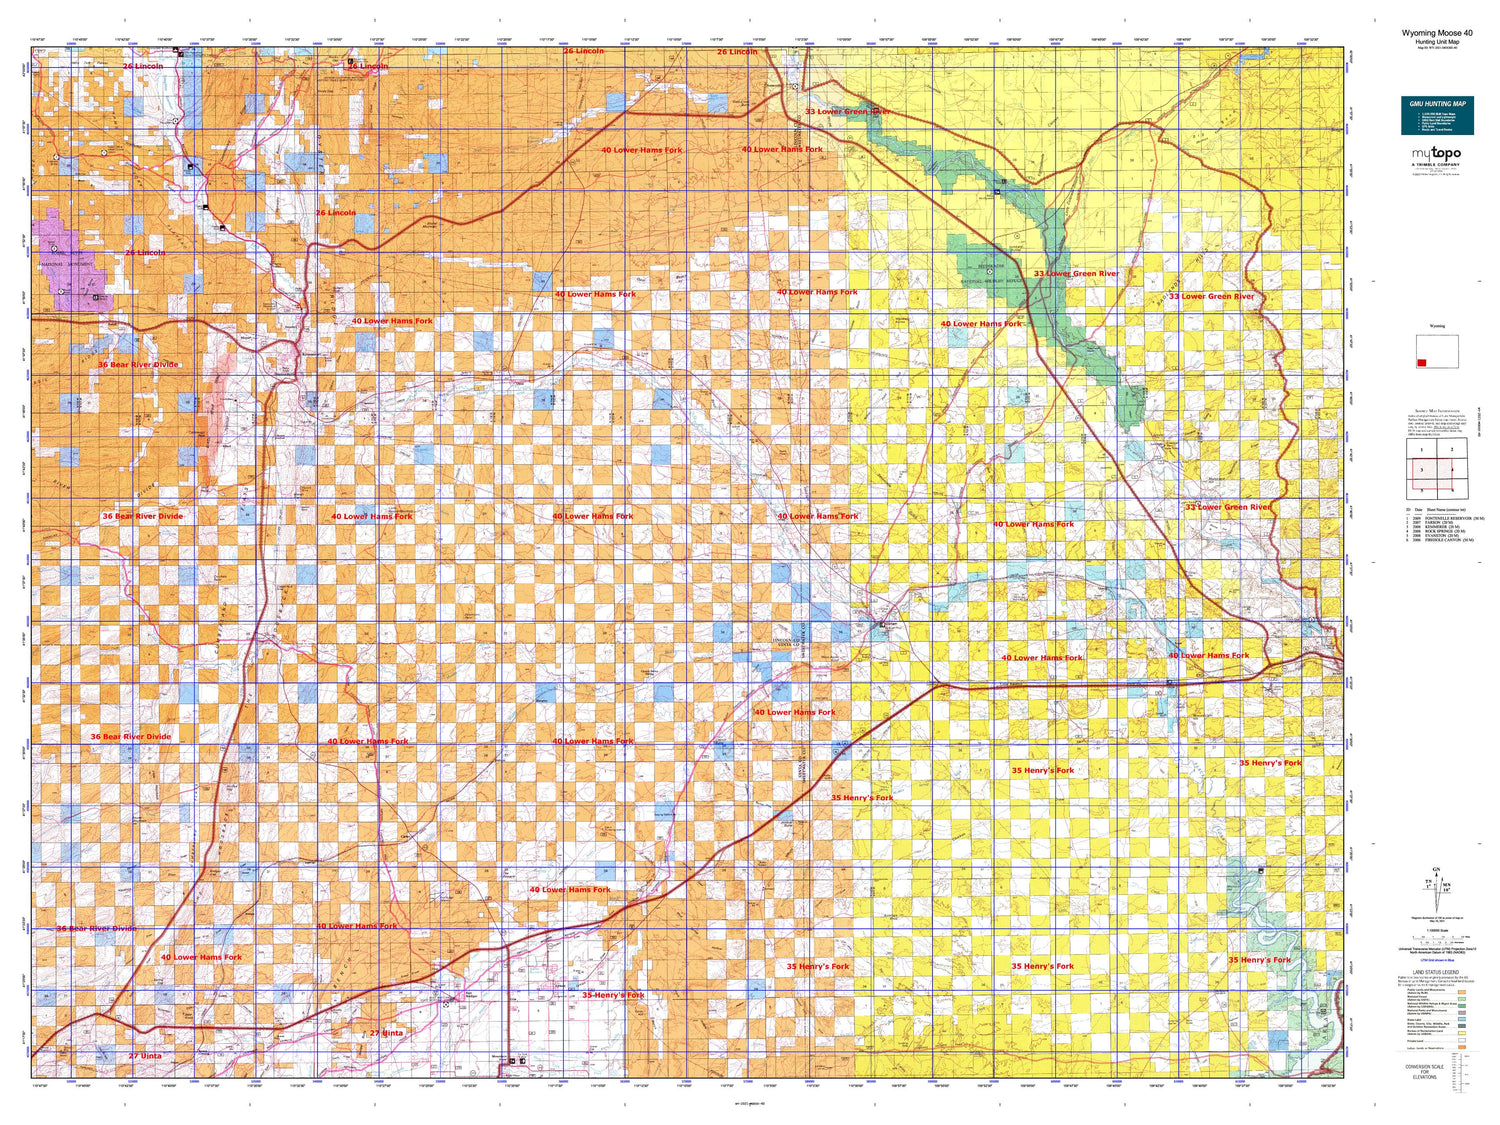 Wyoming Moose 40 Map Image